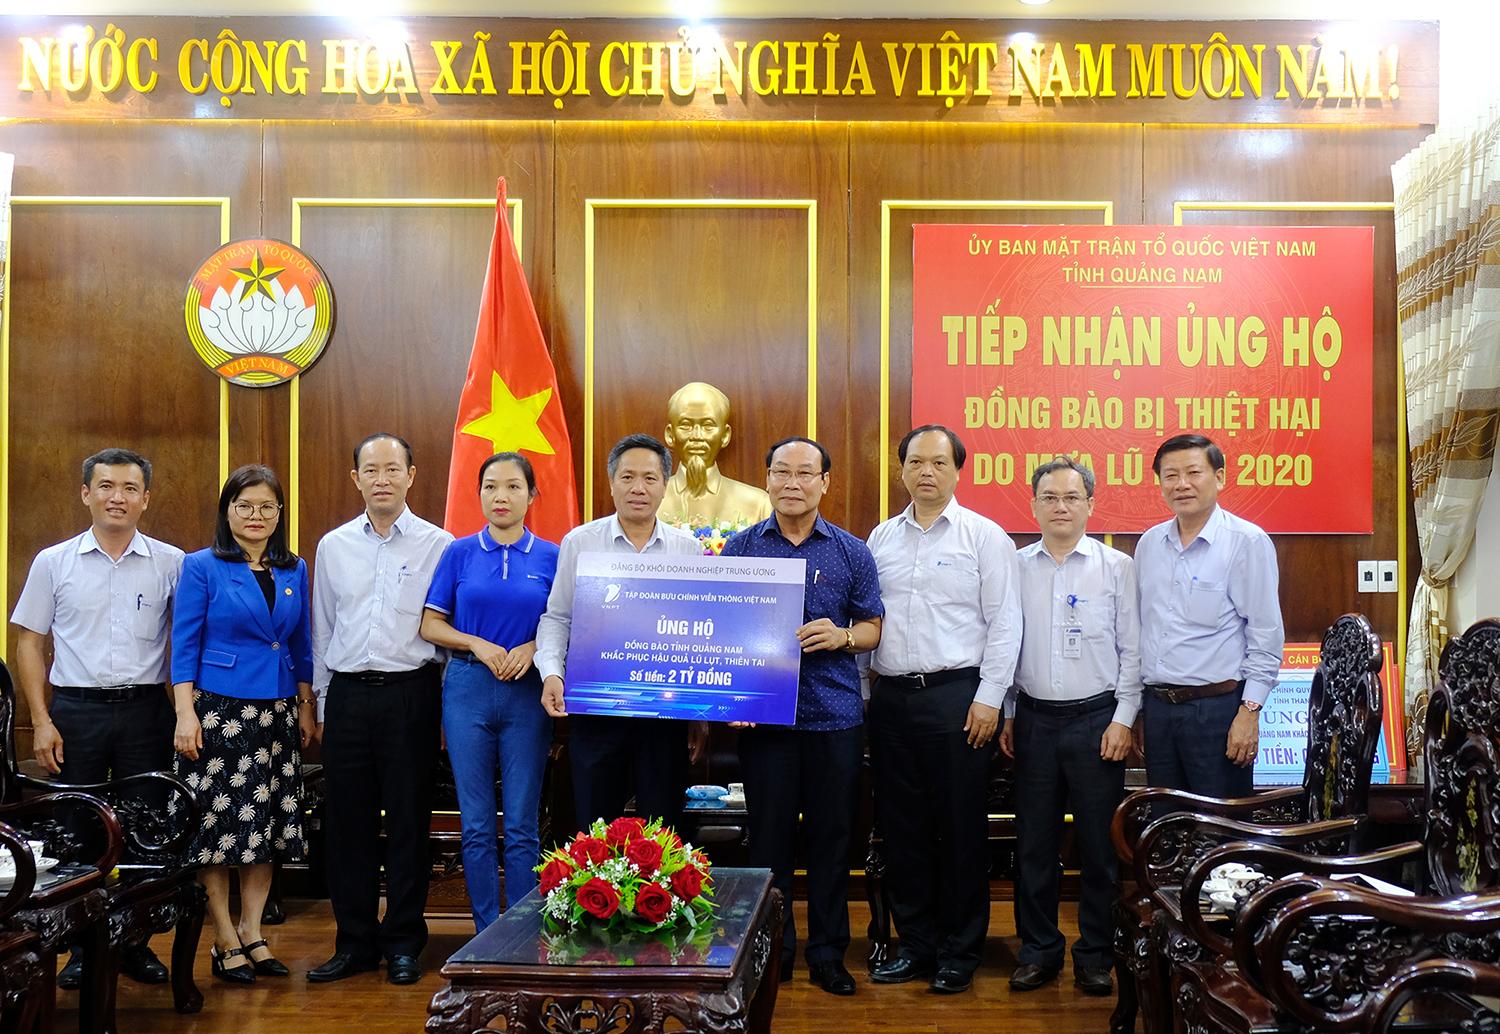 Thay mặt CBCNV VNPT, Phó Tổng Giám đốc Tập đoàn Tô Dũng Thái đã trao tặng cho Ủy ban Mặt trận Tổ quốc tỉnh Quảng Nam 2 tỷ đồng để khắc phục hậu quả do lũ lụt gây ra.